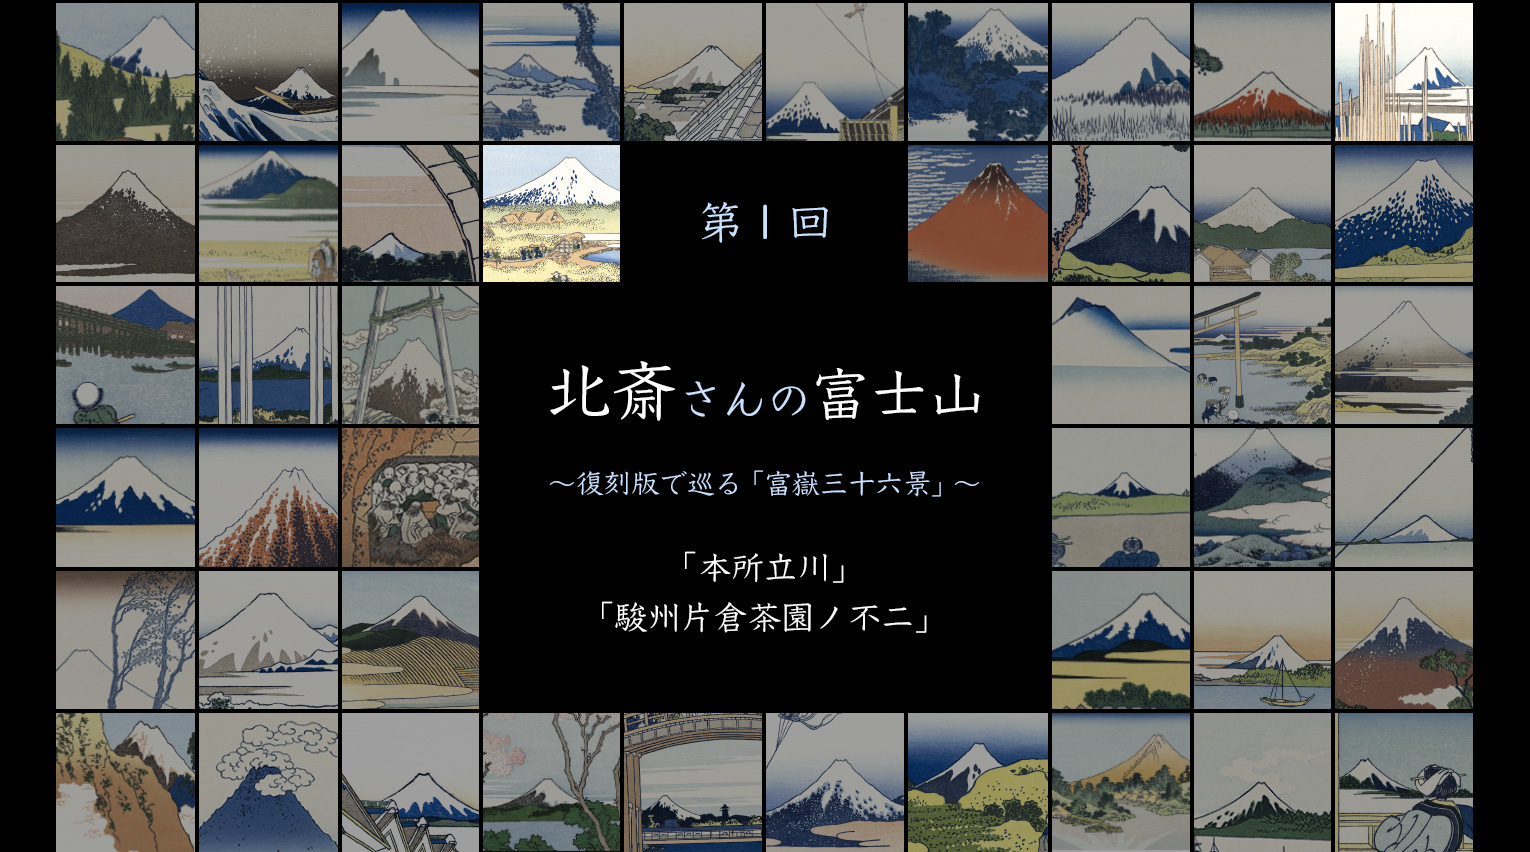 北斎さんの富士山 〜復刻版で巡る「富嶽三十六景」〜 (1)【PR】